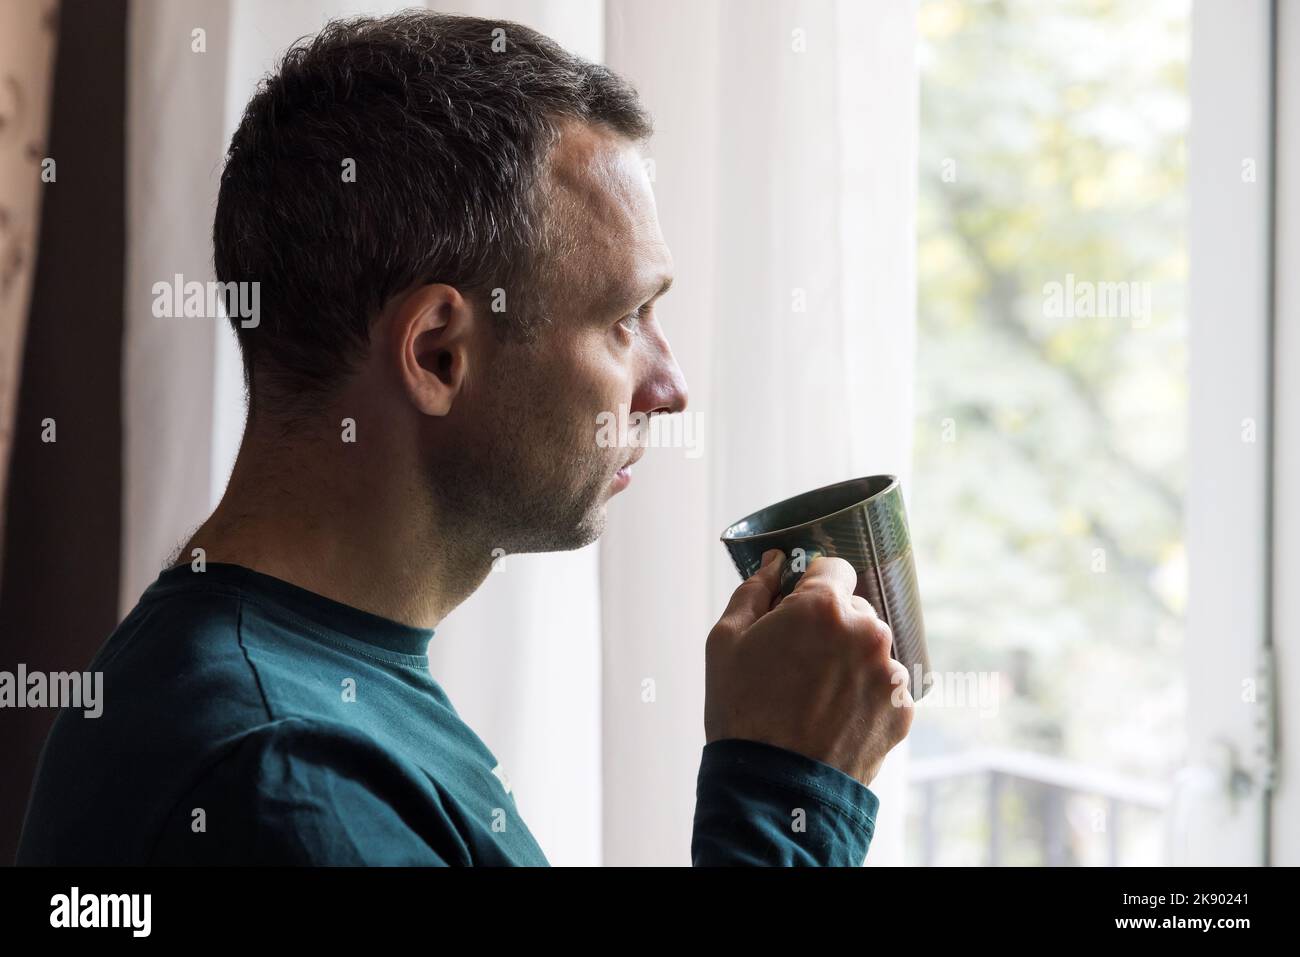 Profilporträt eines jungen erwachsenen kaukasischen Mannes, der vor einem hellen Fenster mit einer Tasse Kaffee in der Hand steht Stockfoto